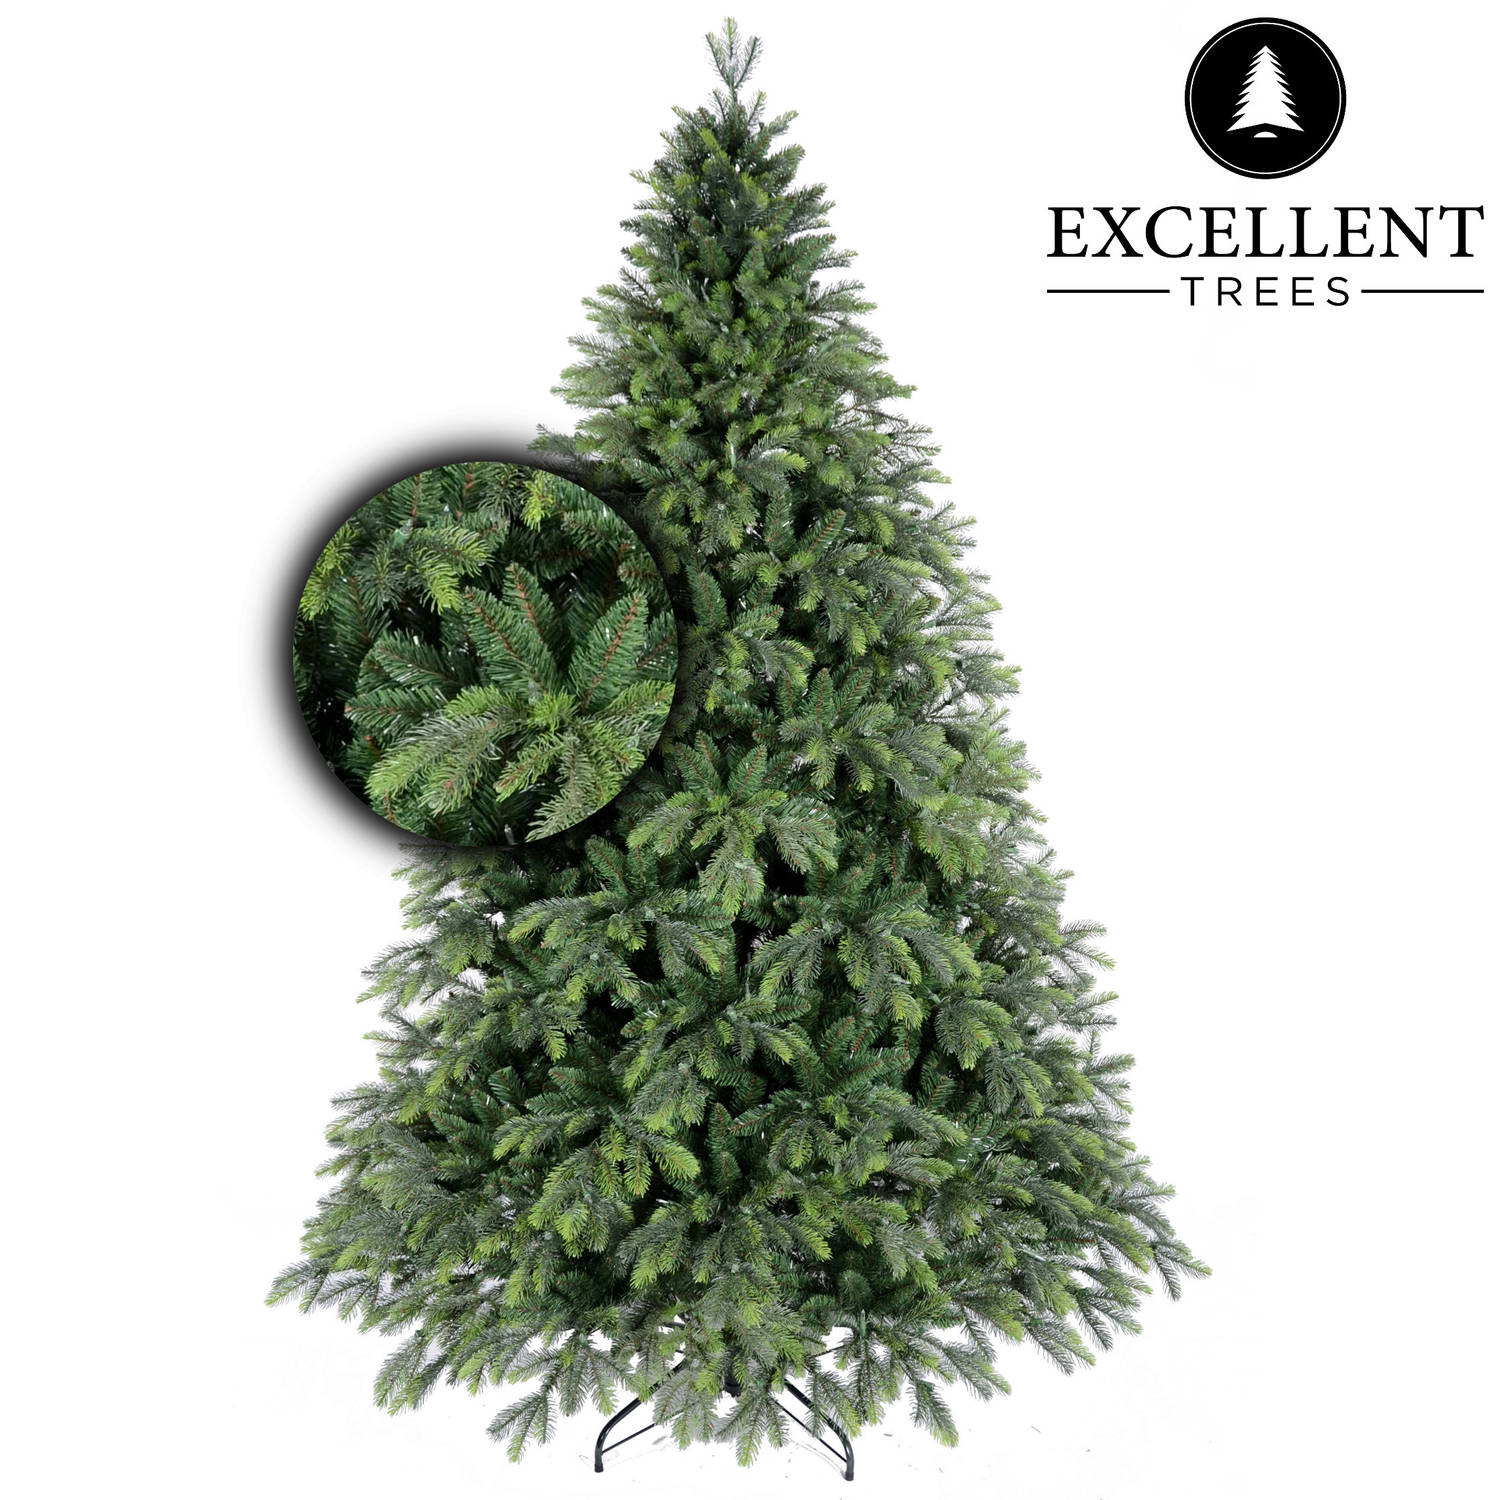 Kerstboom Excellent Trees® Kalmar 150 cm Luxe uitvoering